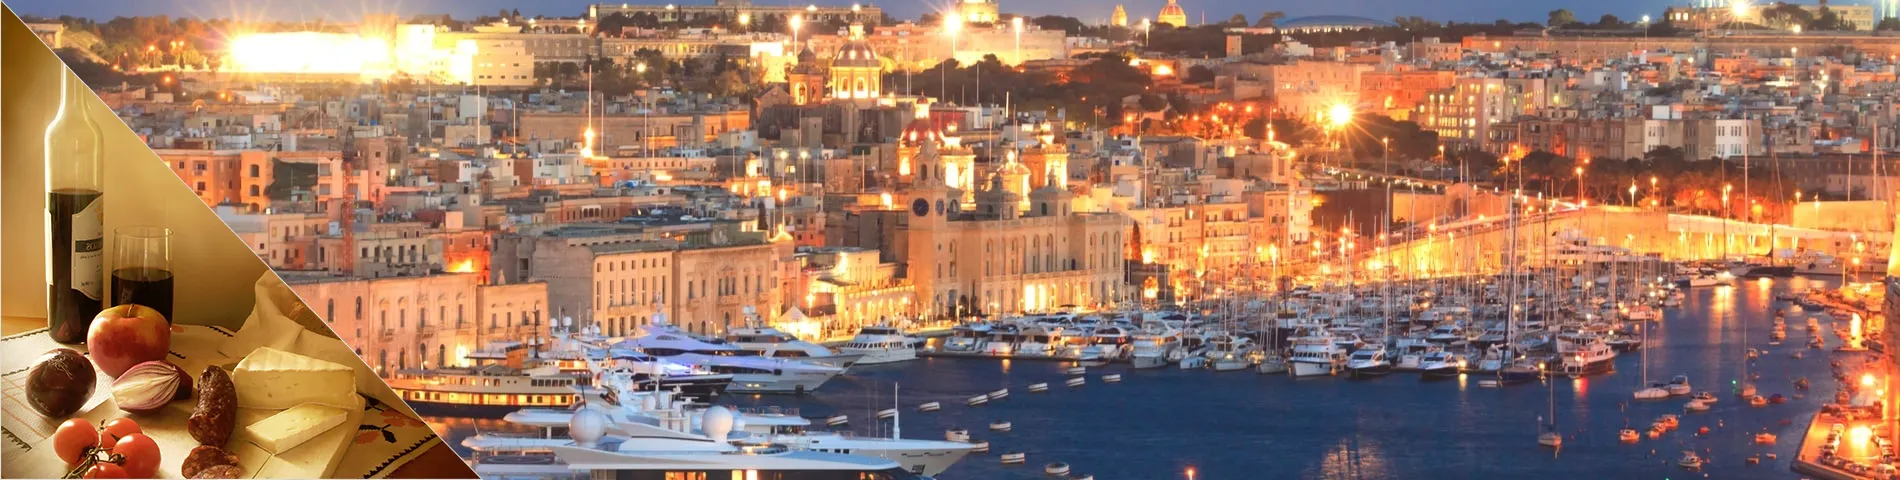 Valletta - Angličtina a kultúra